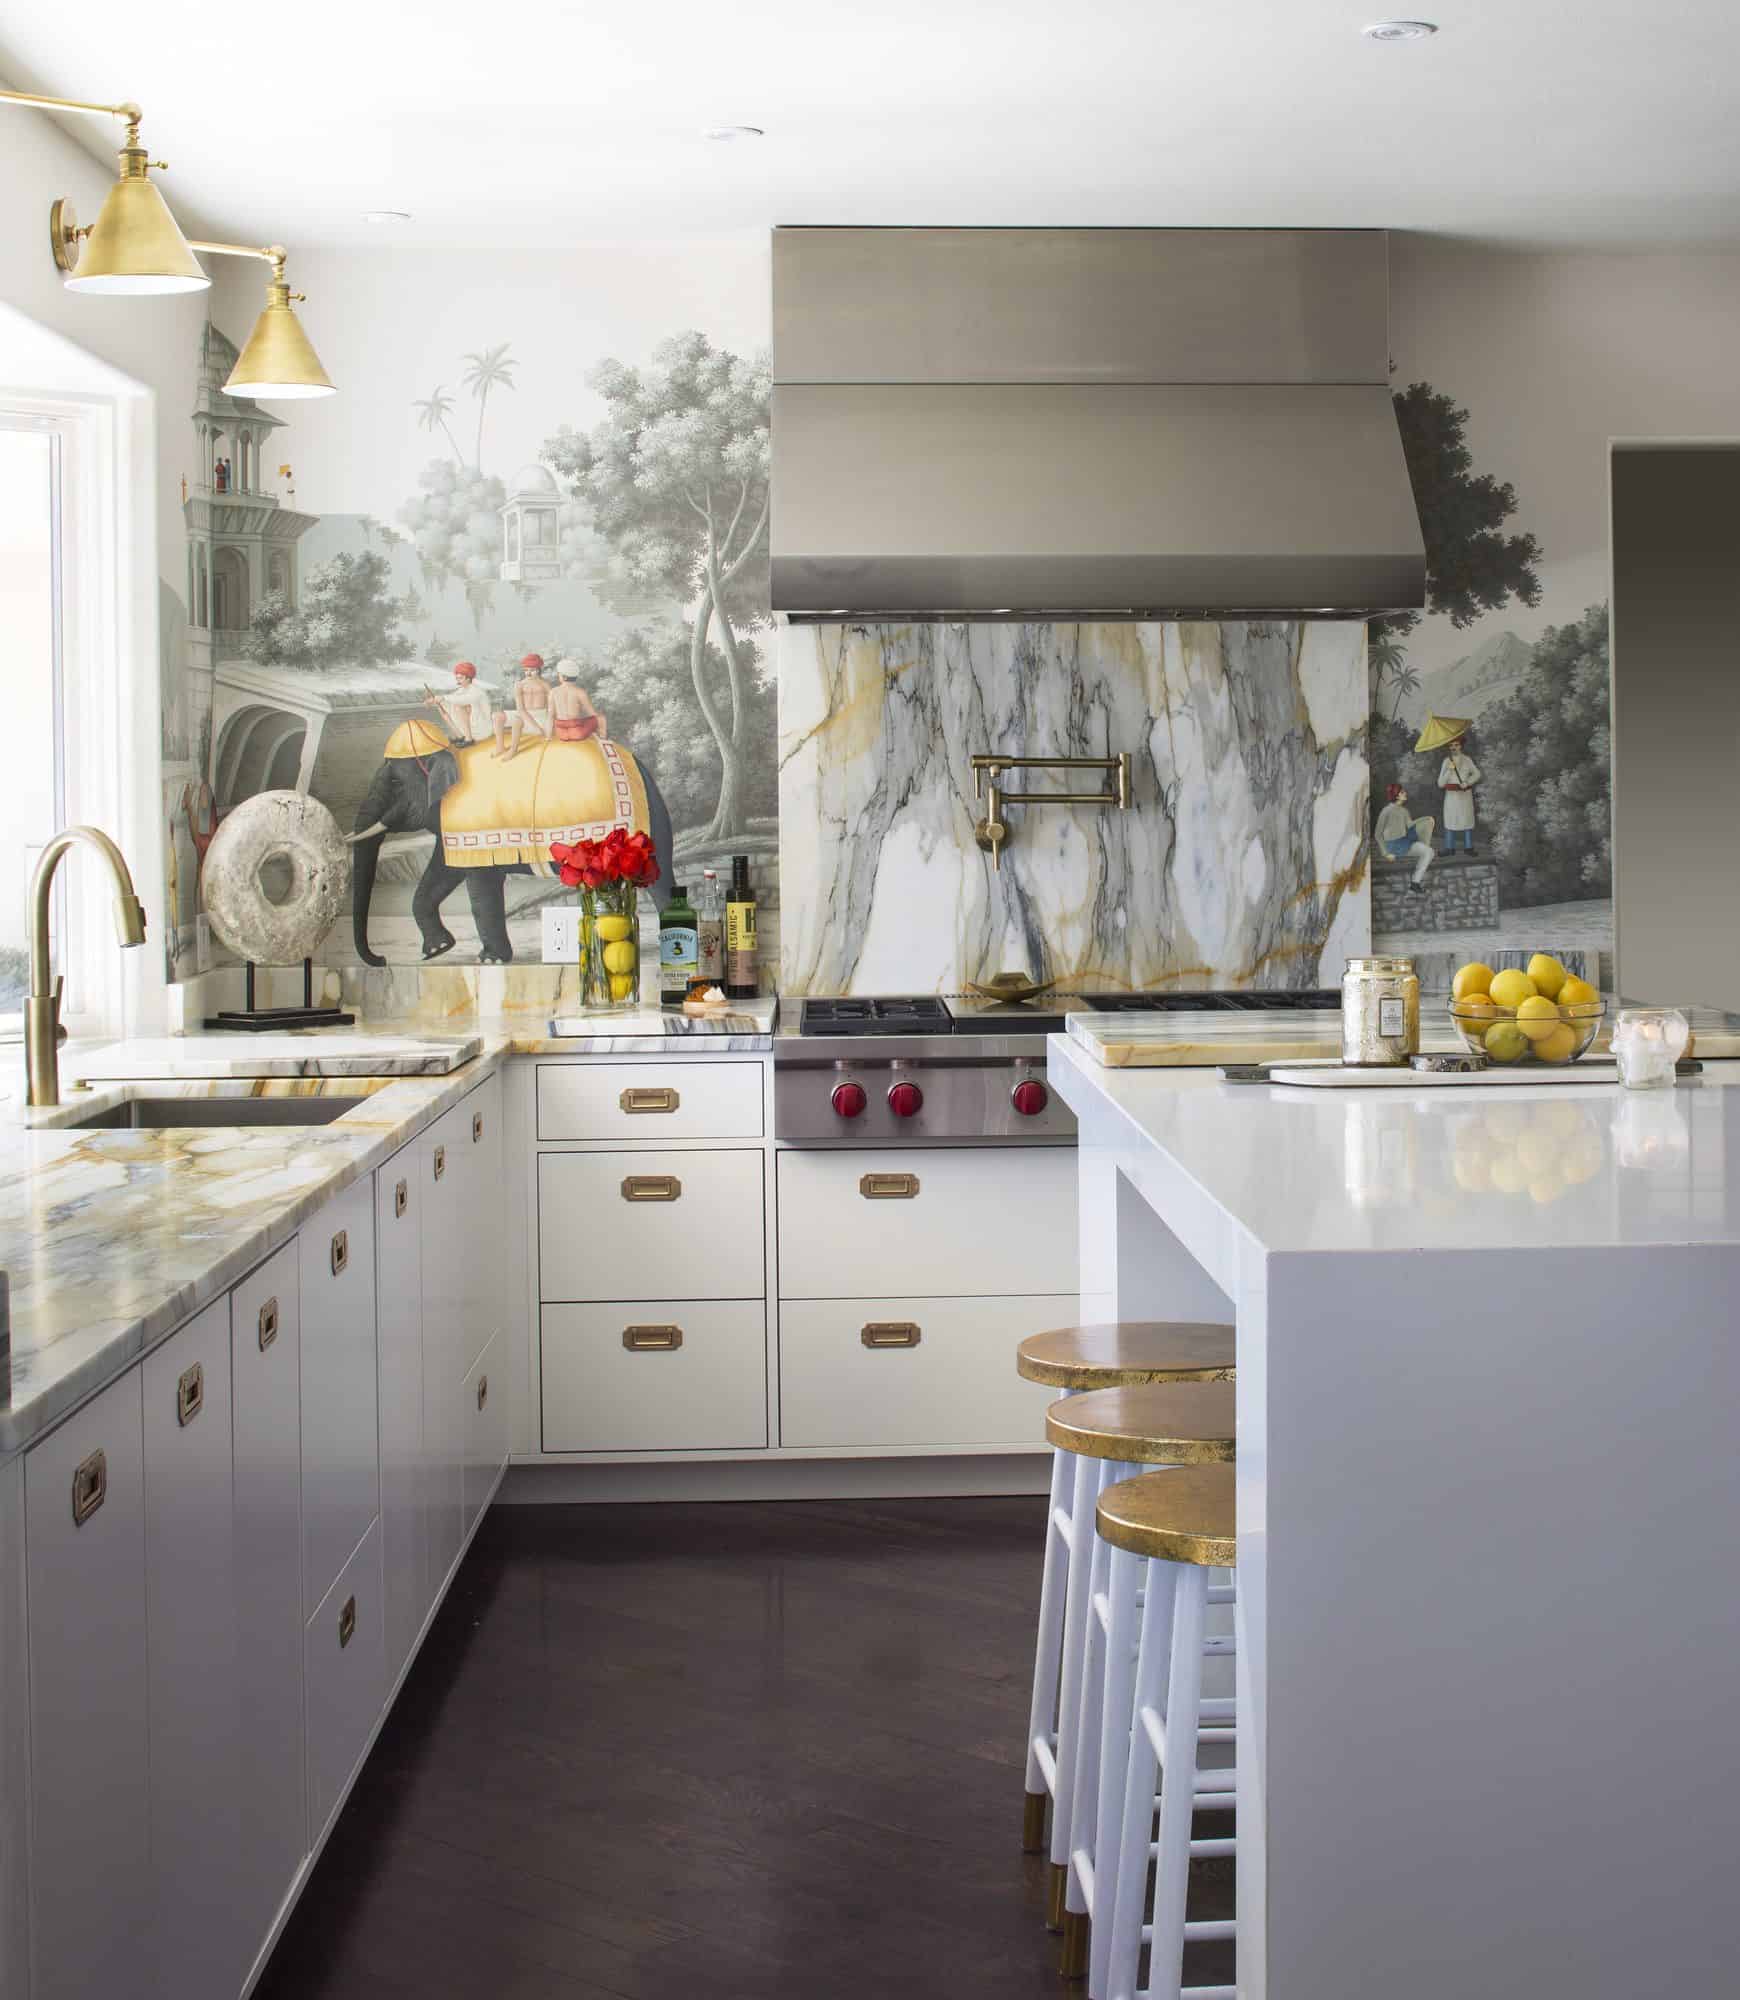 Vibrant interior design accent colors in white luxe kitchen